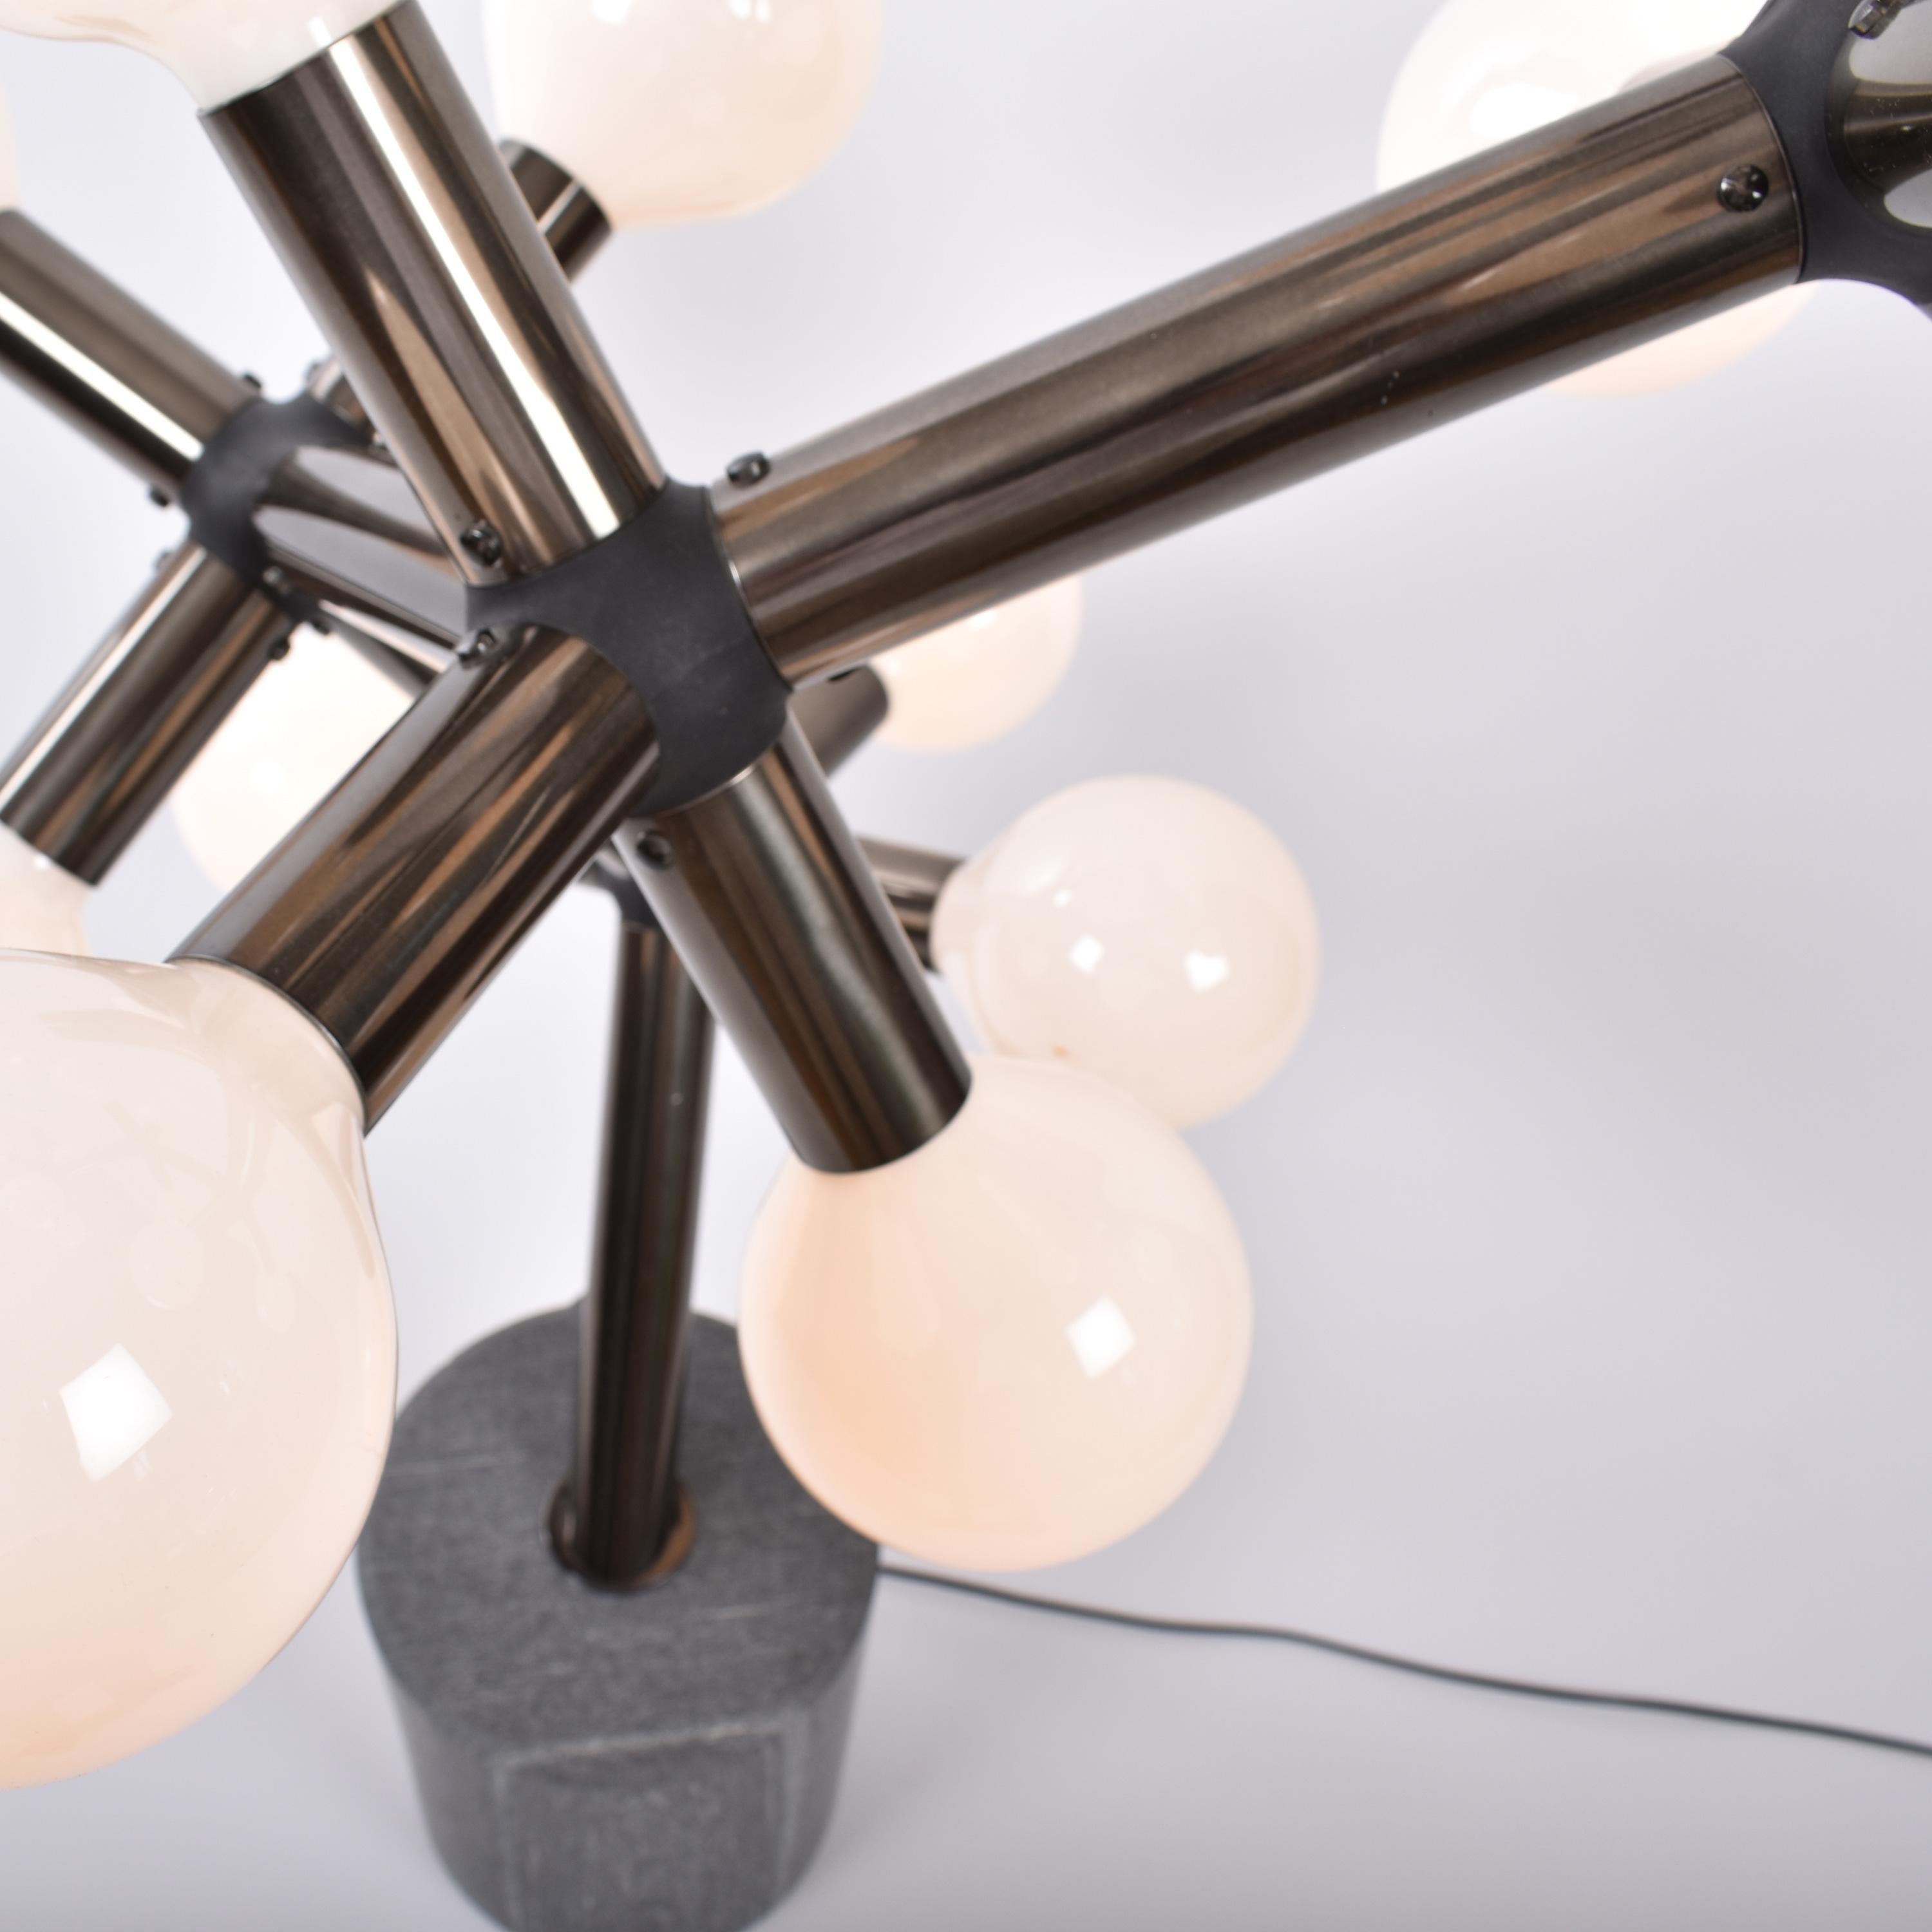 Aluminum Mid-Century Modern Atomic Floor Lamp by Trix & Robert Haussmann for Swisslamps